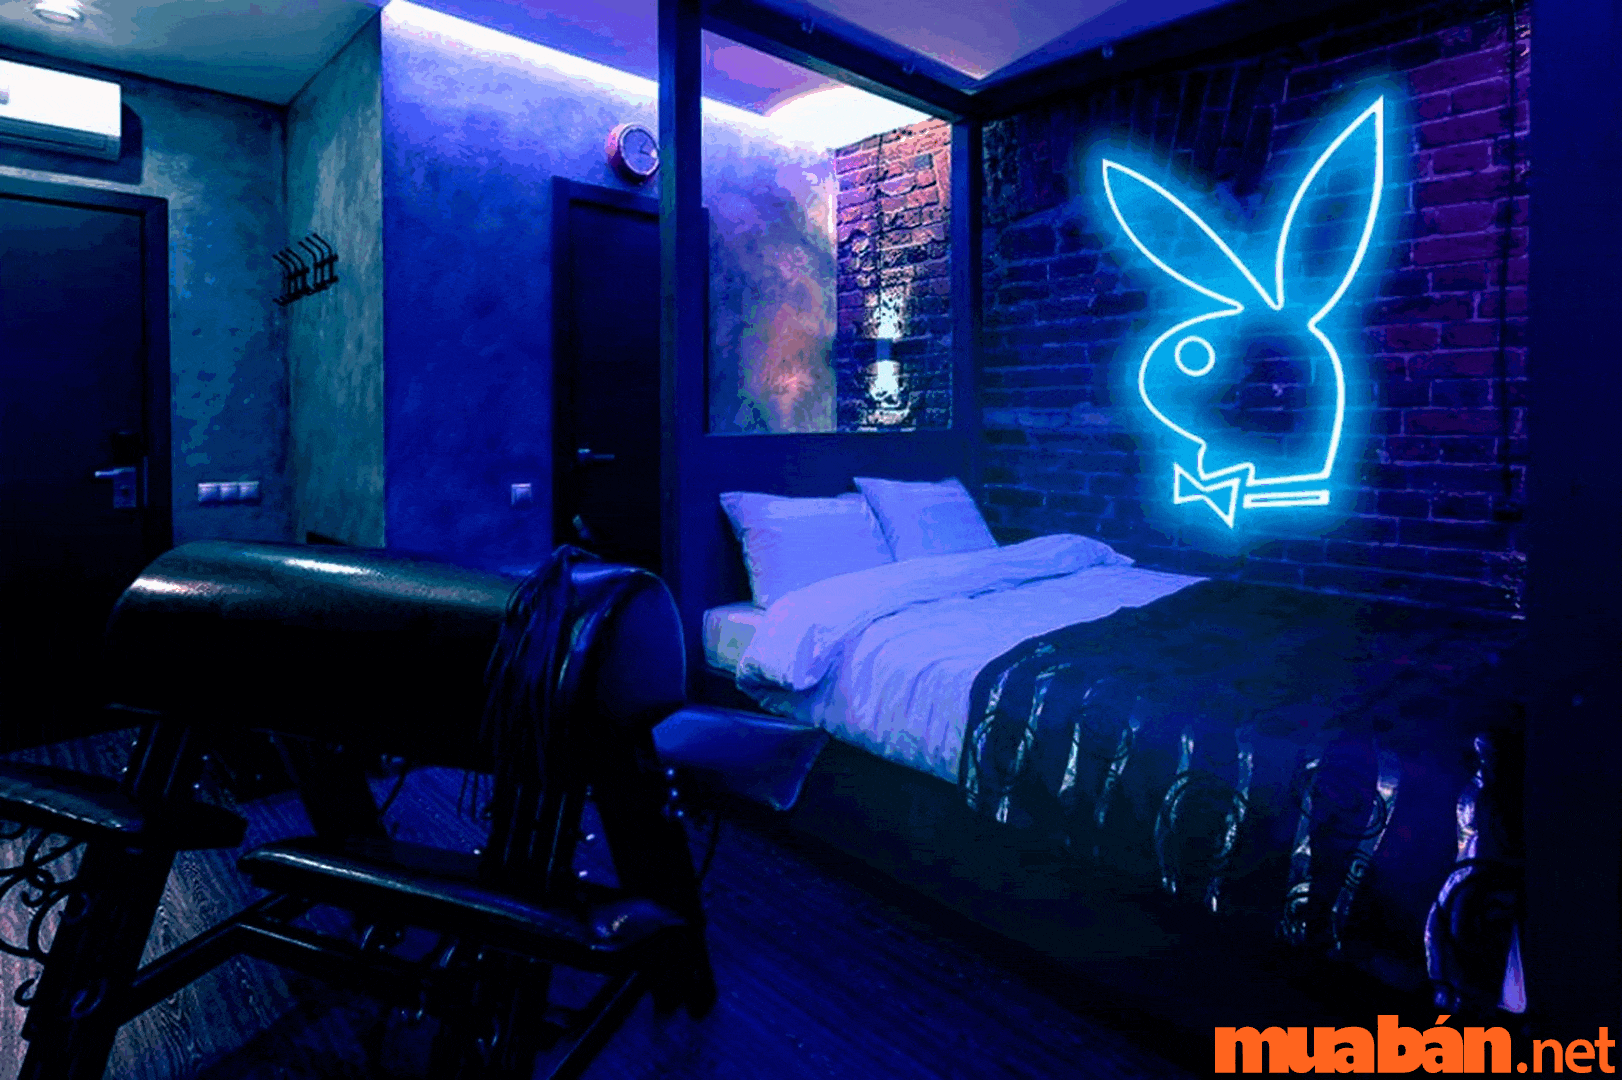 những chiếc đèn led, đèn neon uốn chữ đang trở thành xu hướng được sử dụng nhiều trong decor phòng ngủ chill